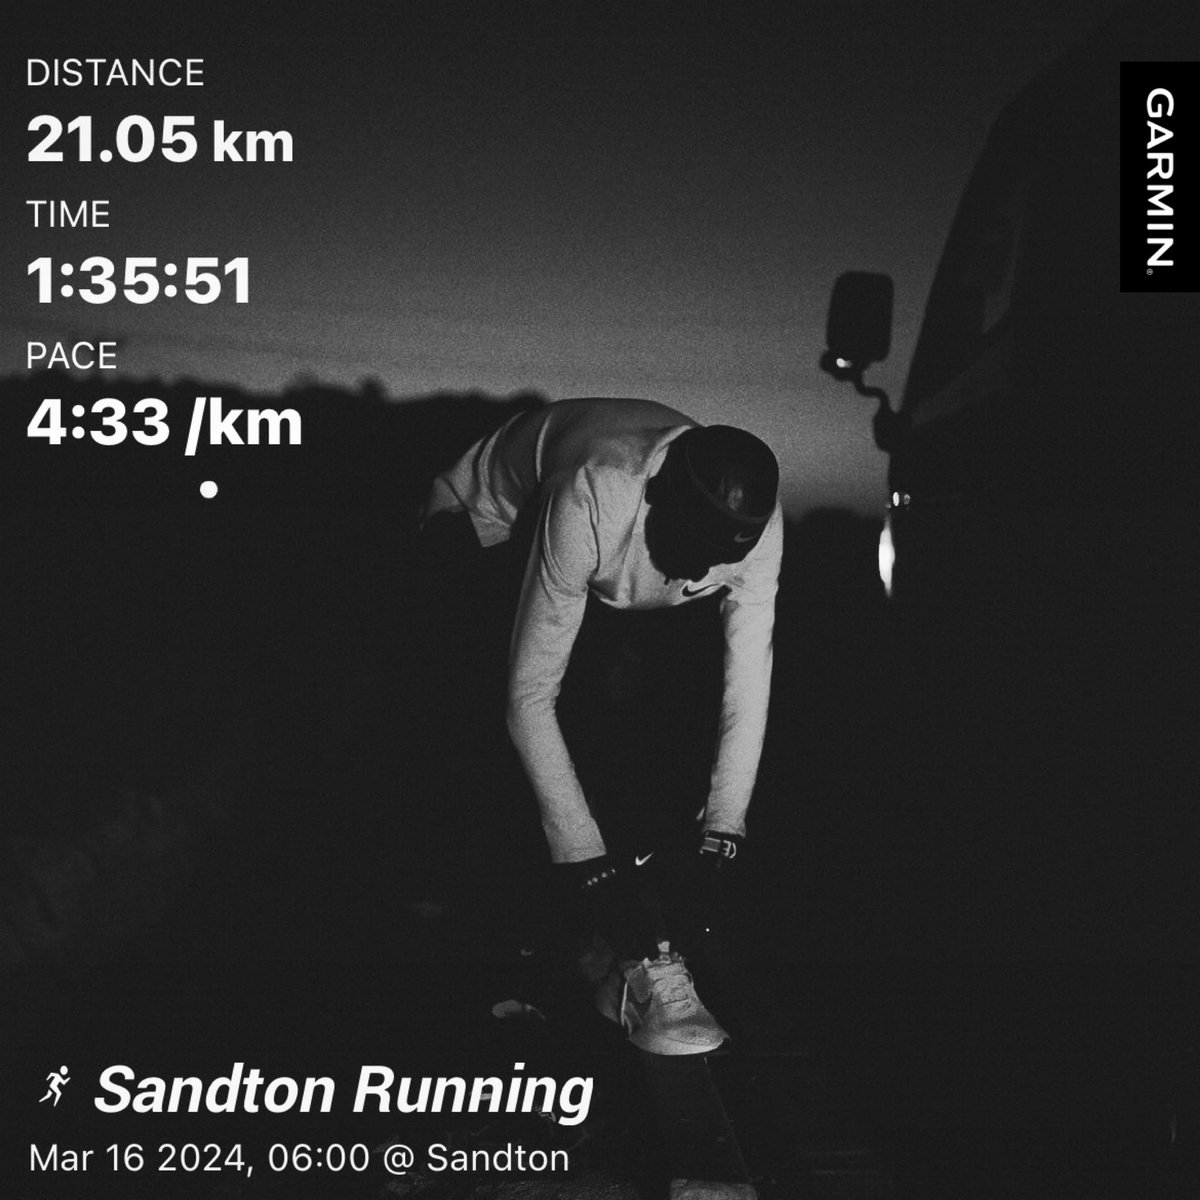 Speed Endurance | 8000m X 2 

#Skhindigang
#skhindigangcoaching
#runningwithsoleac 
#ultramarathontraining 
#InSaneSquad
#TrainInsaneOrRemainTheSame

Commitment.Consistency. Speed